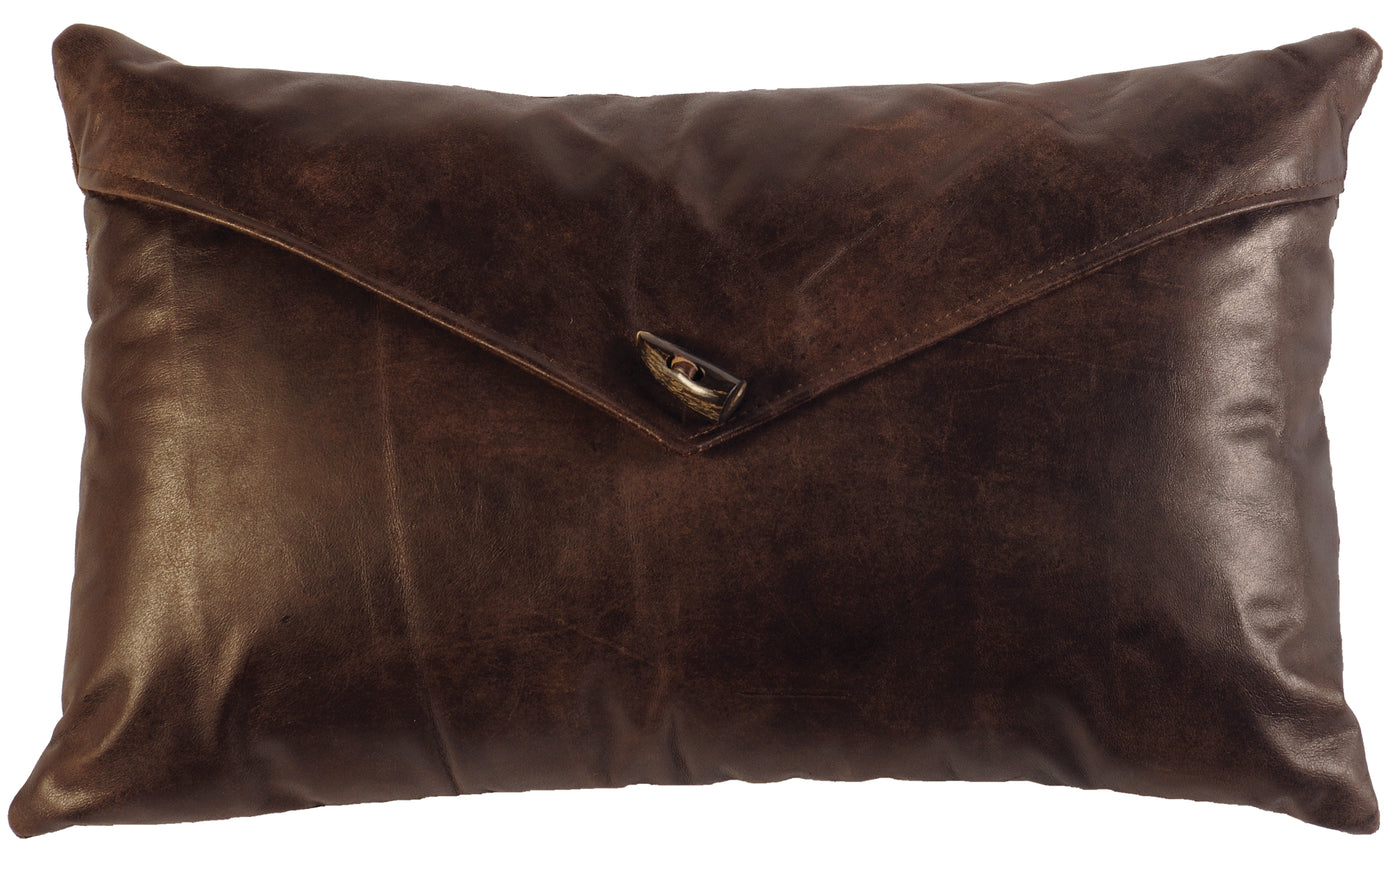 Canvello 木質皮革枕頭 - 布質靠背 - 14 英寸 x 22 英寸